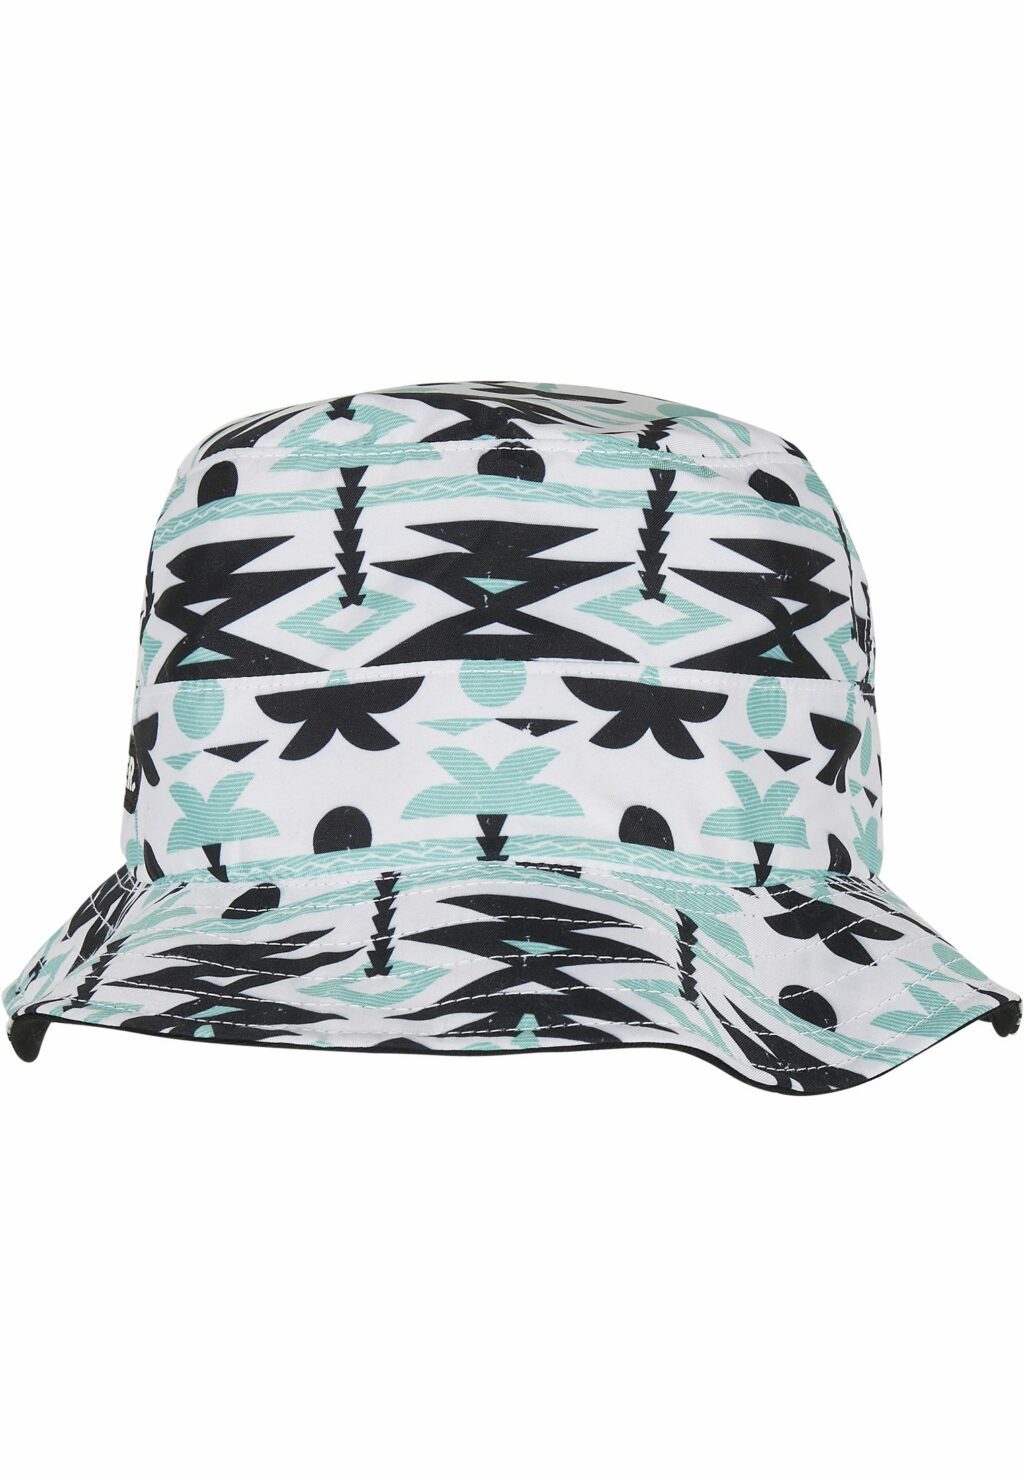 C&S WL Aztec Summer Reversible Bucket Hat black/mc one CS2646